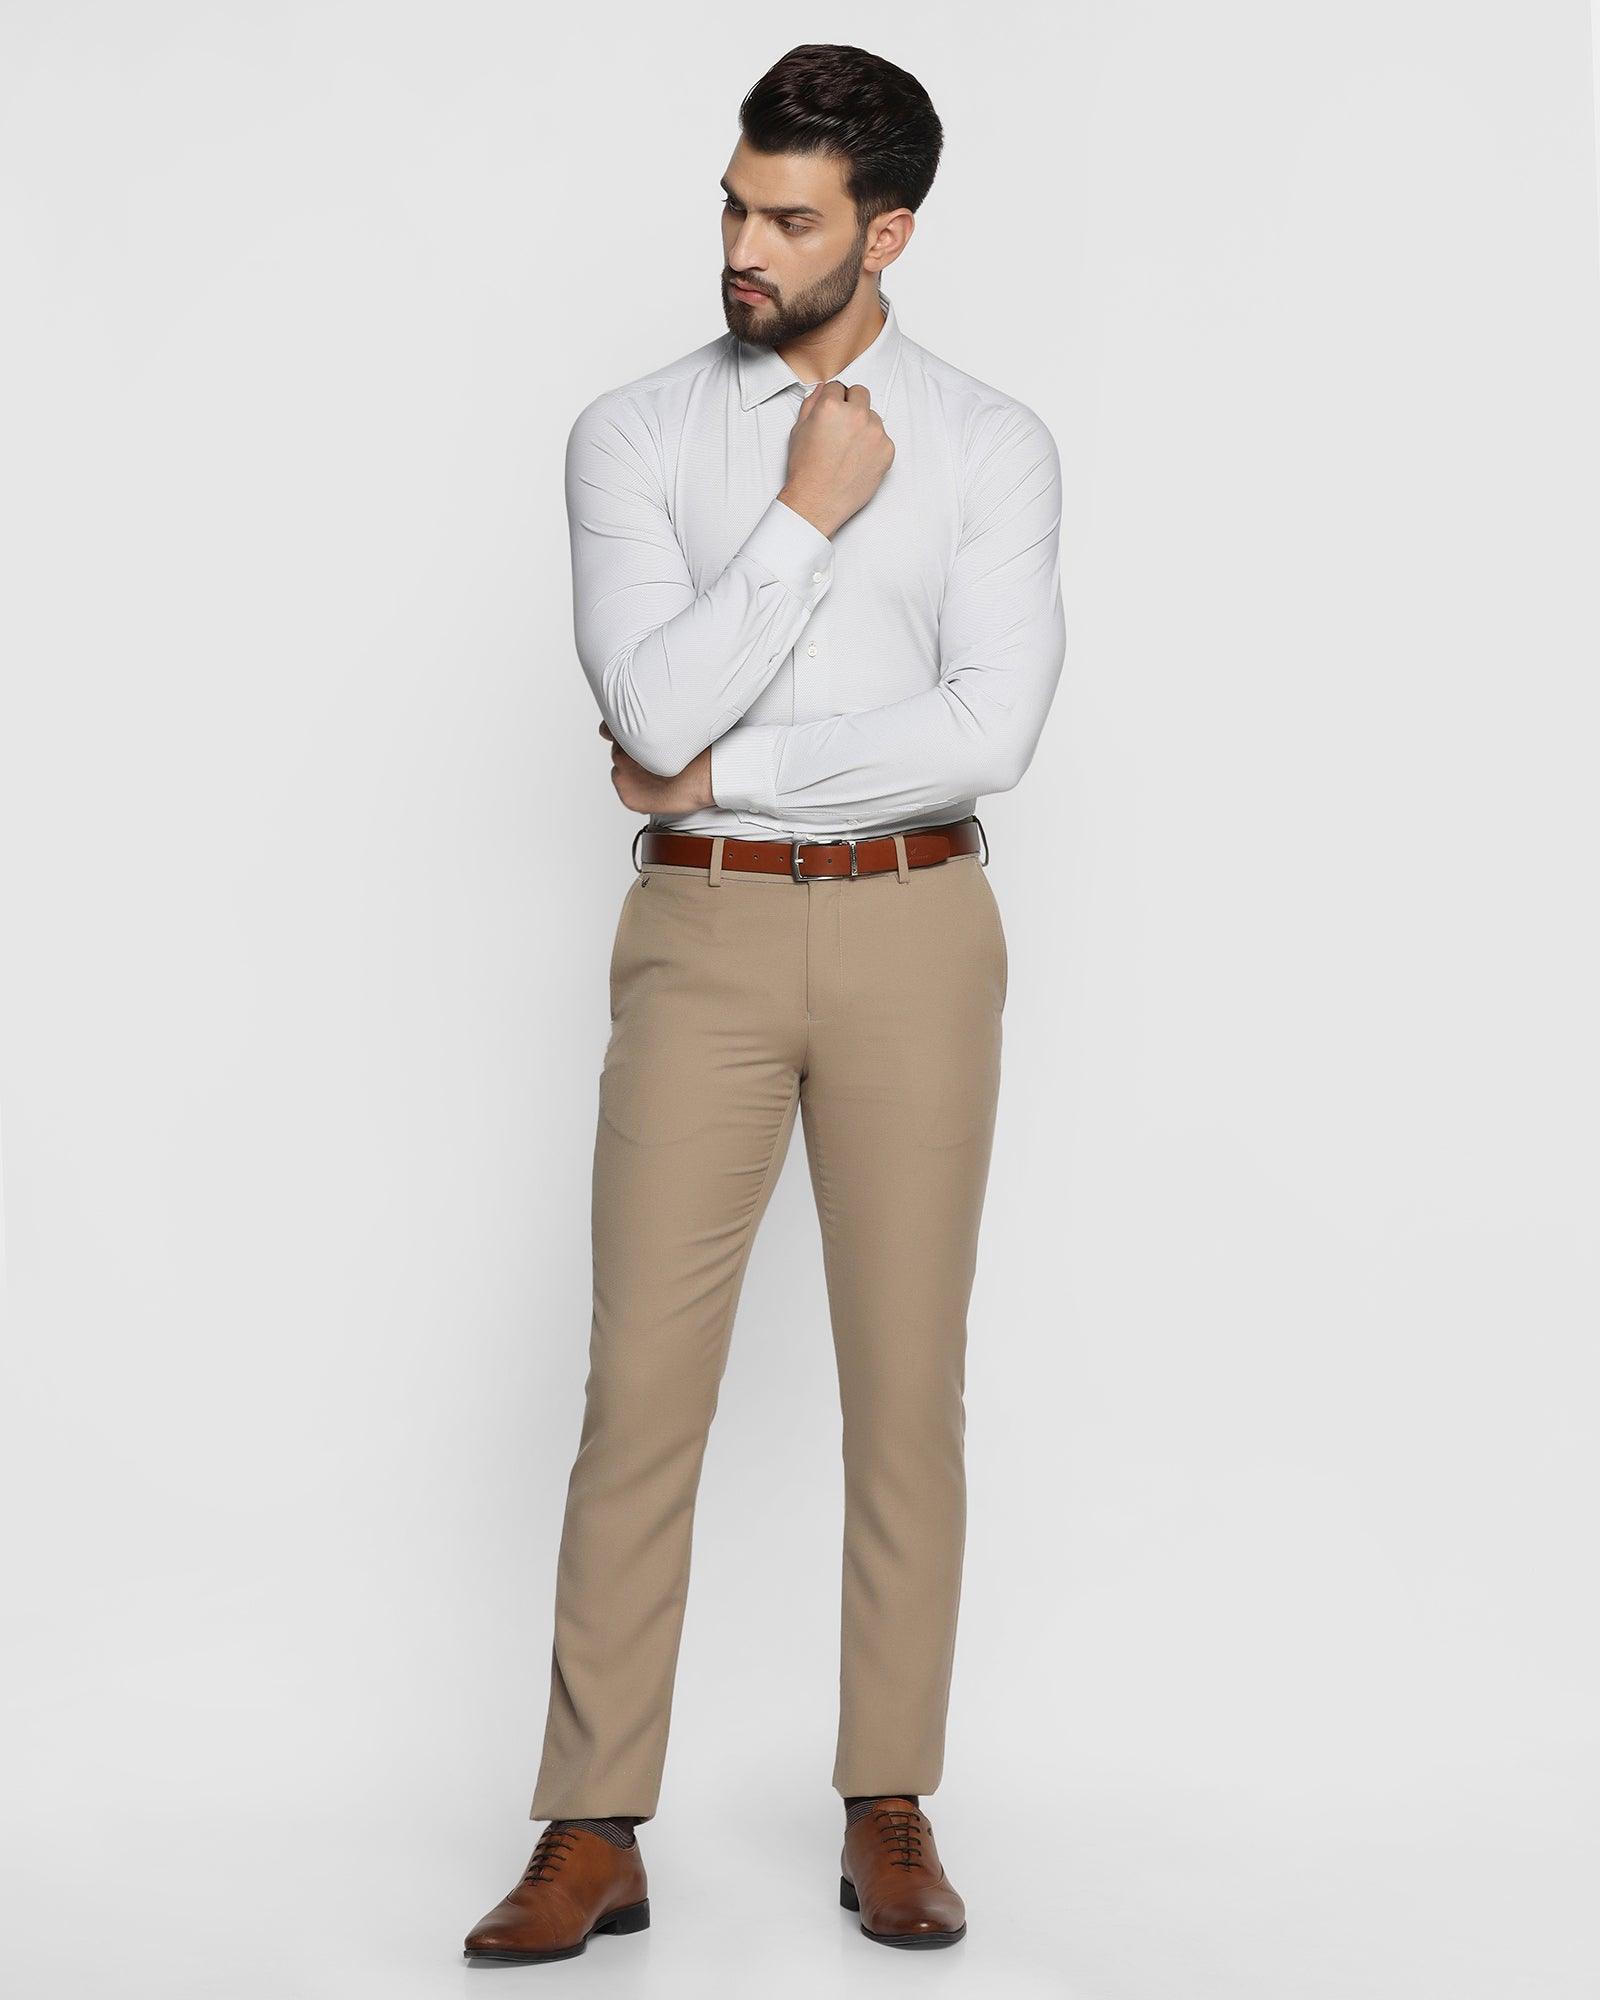 Buy Mechanical Uniform Khaki Shirt and Khaki Pant (X-Large) at Amazon.in